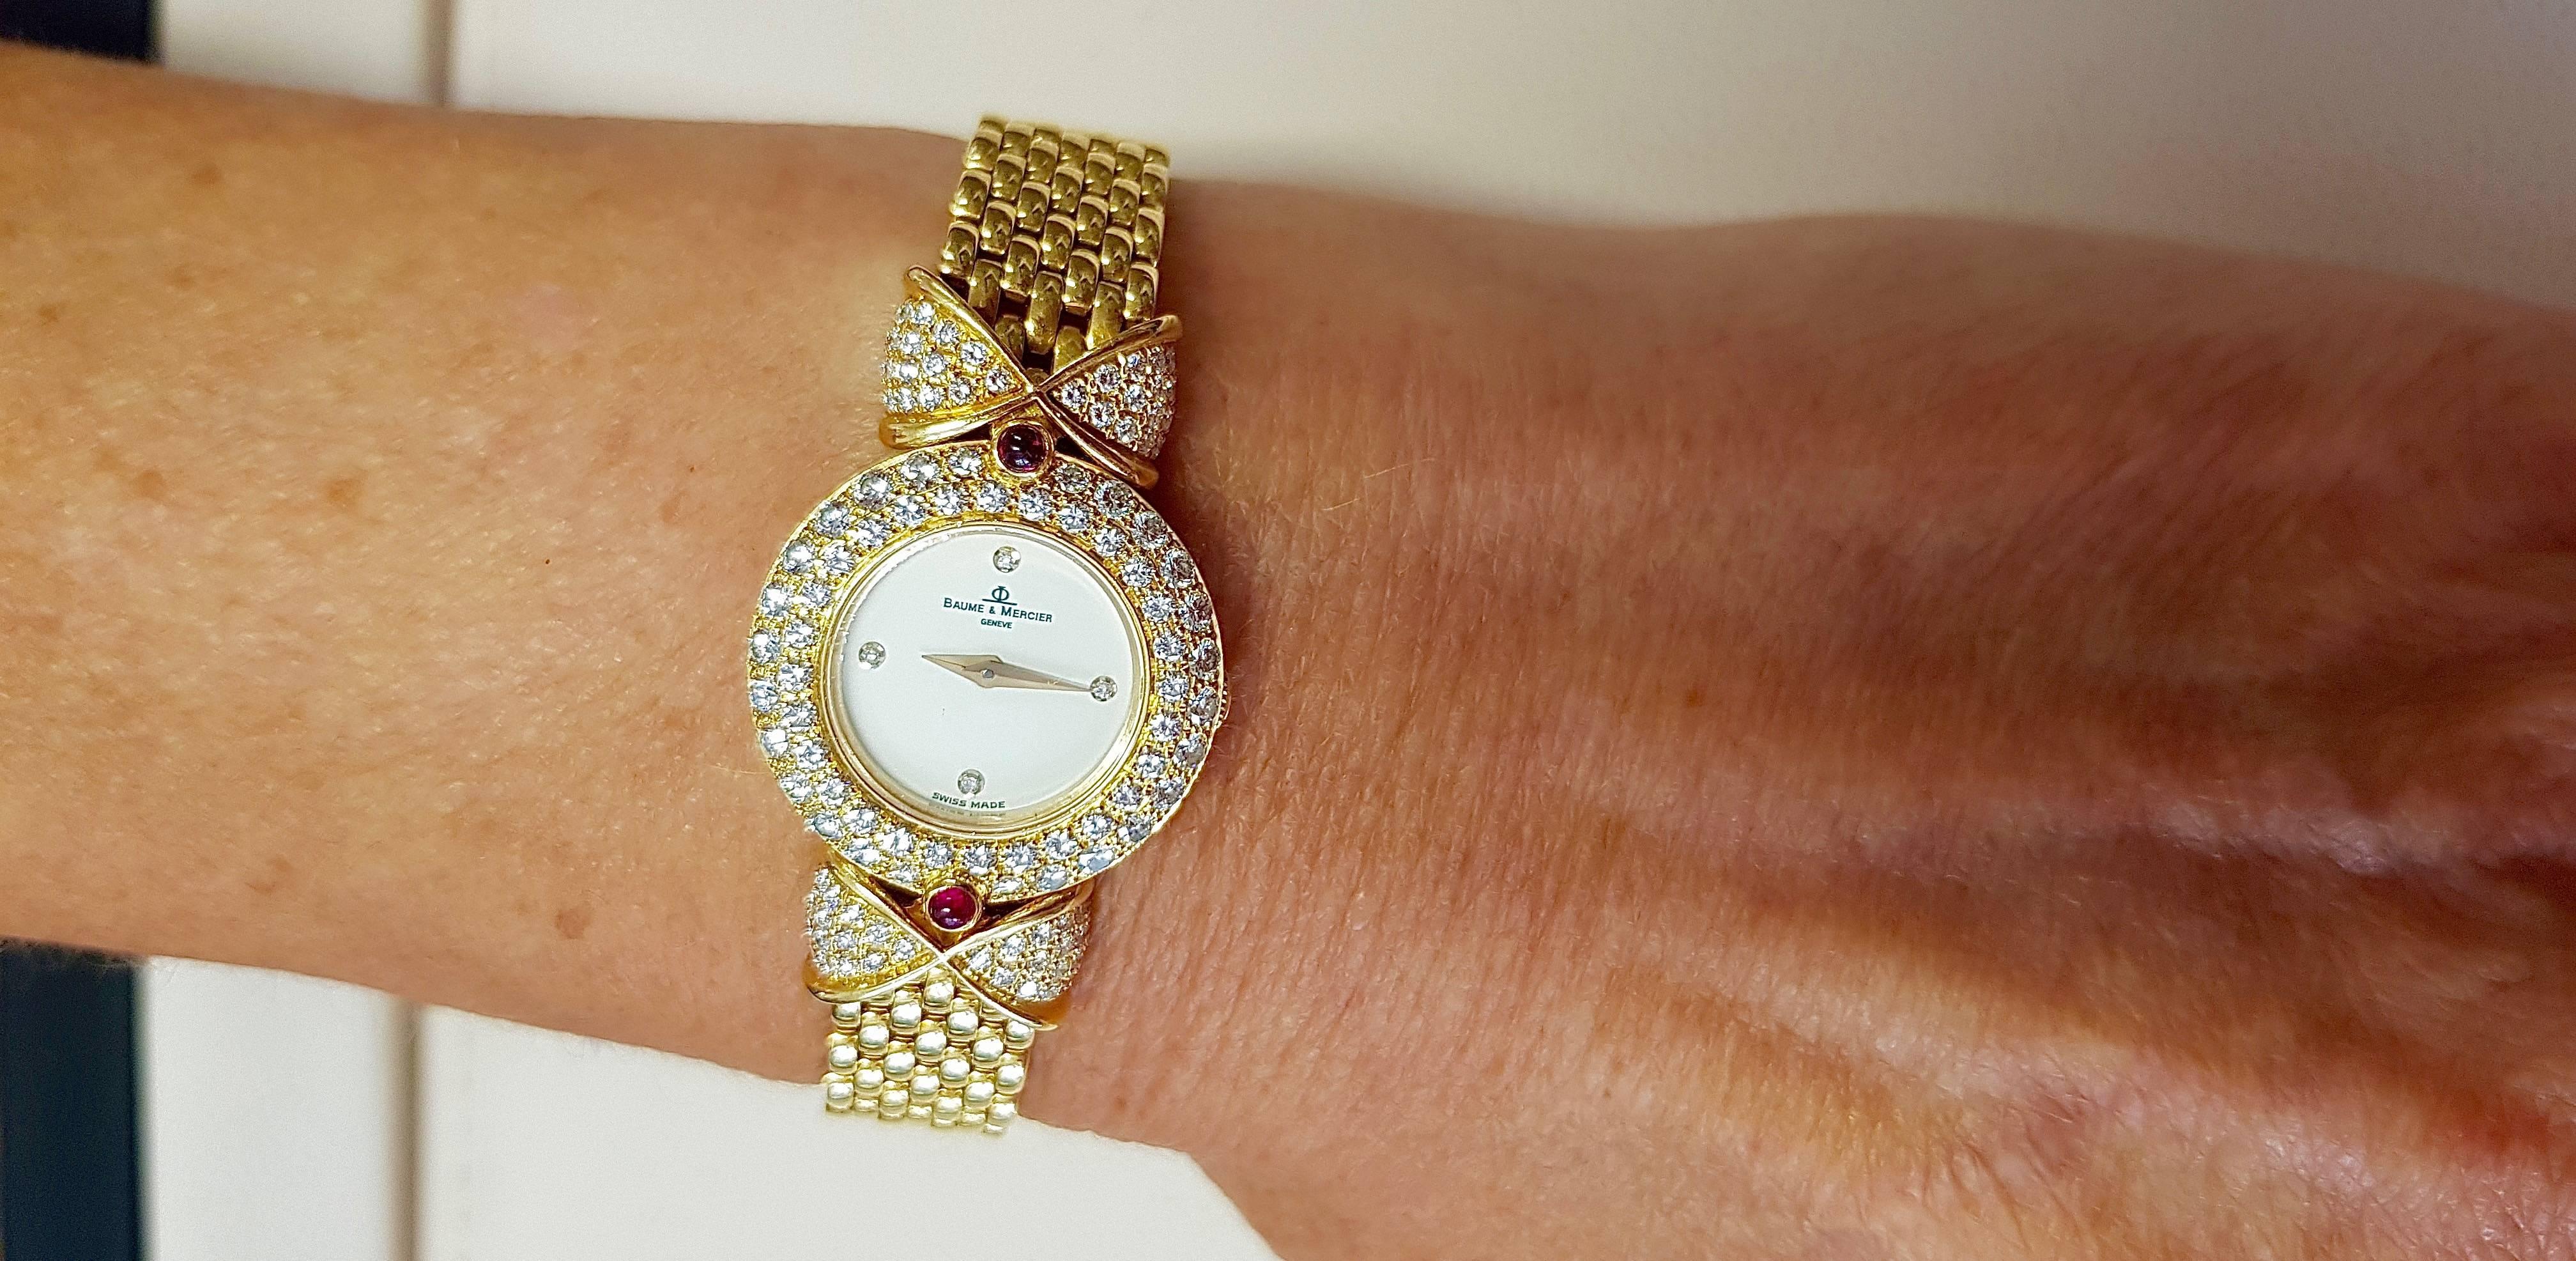 18 Karat Gold Baume & Mercier 'Loop Shape' Diamond Ladies Watch with Rubies For Sale 1